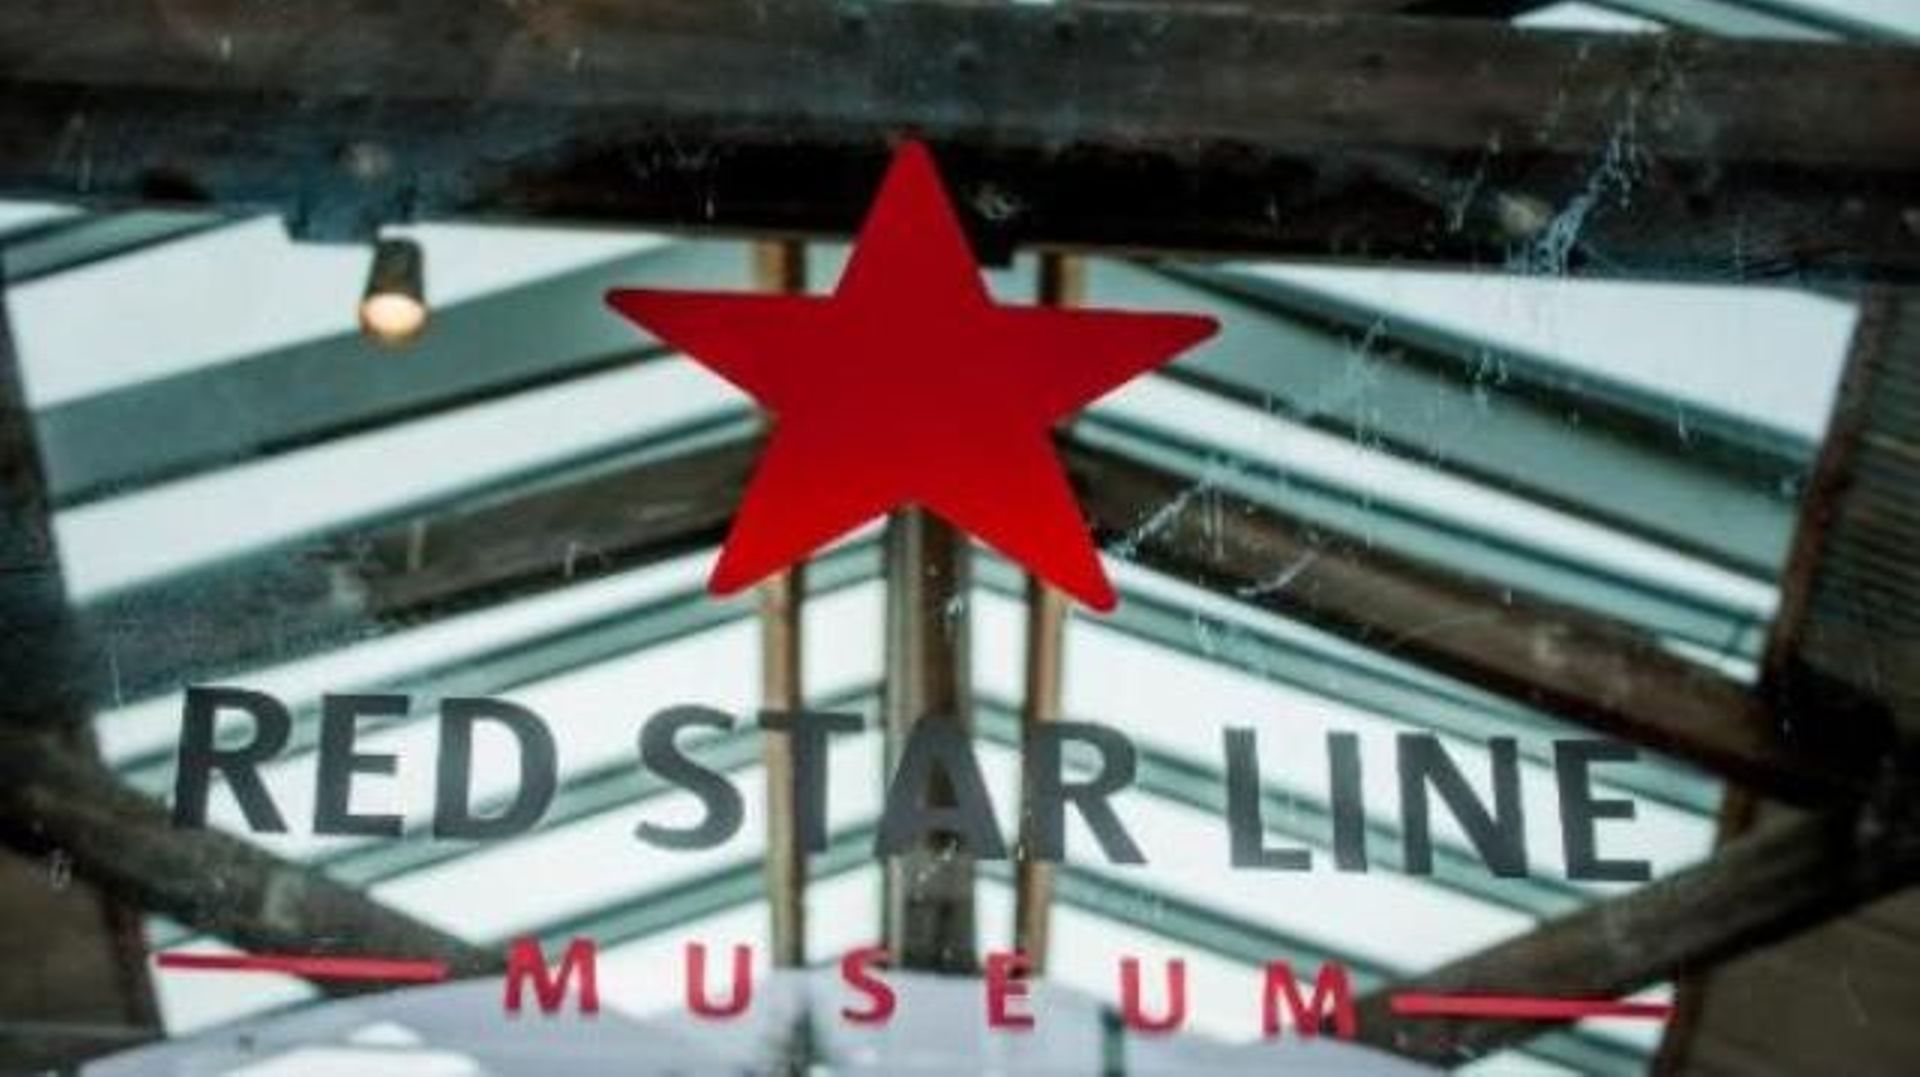 Le Musée Red Star Line d'Anvers décroche une récompense européenne